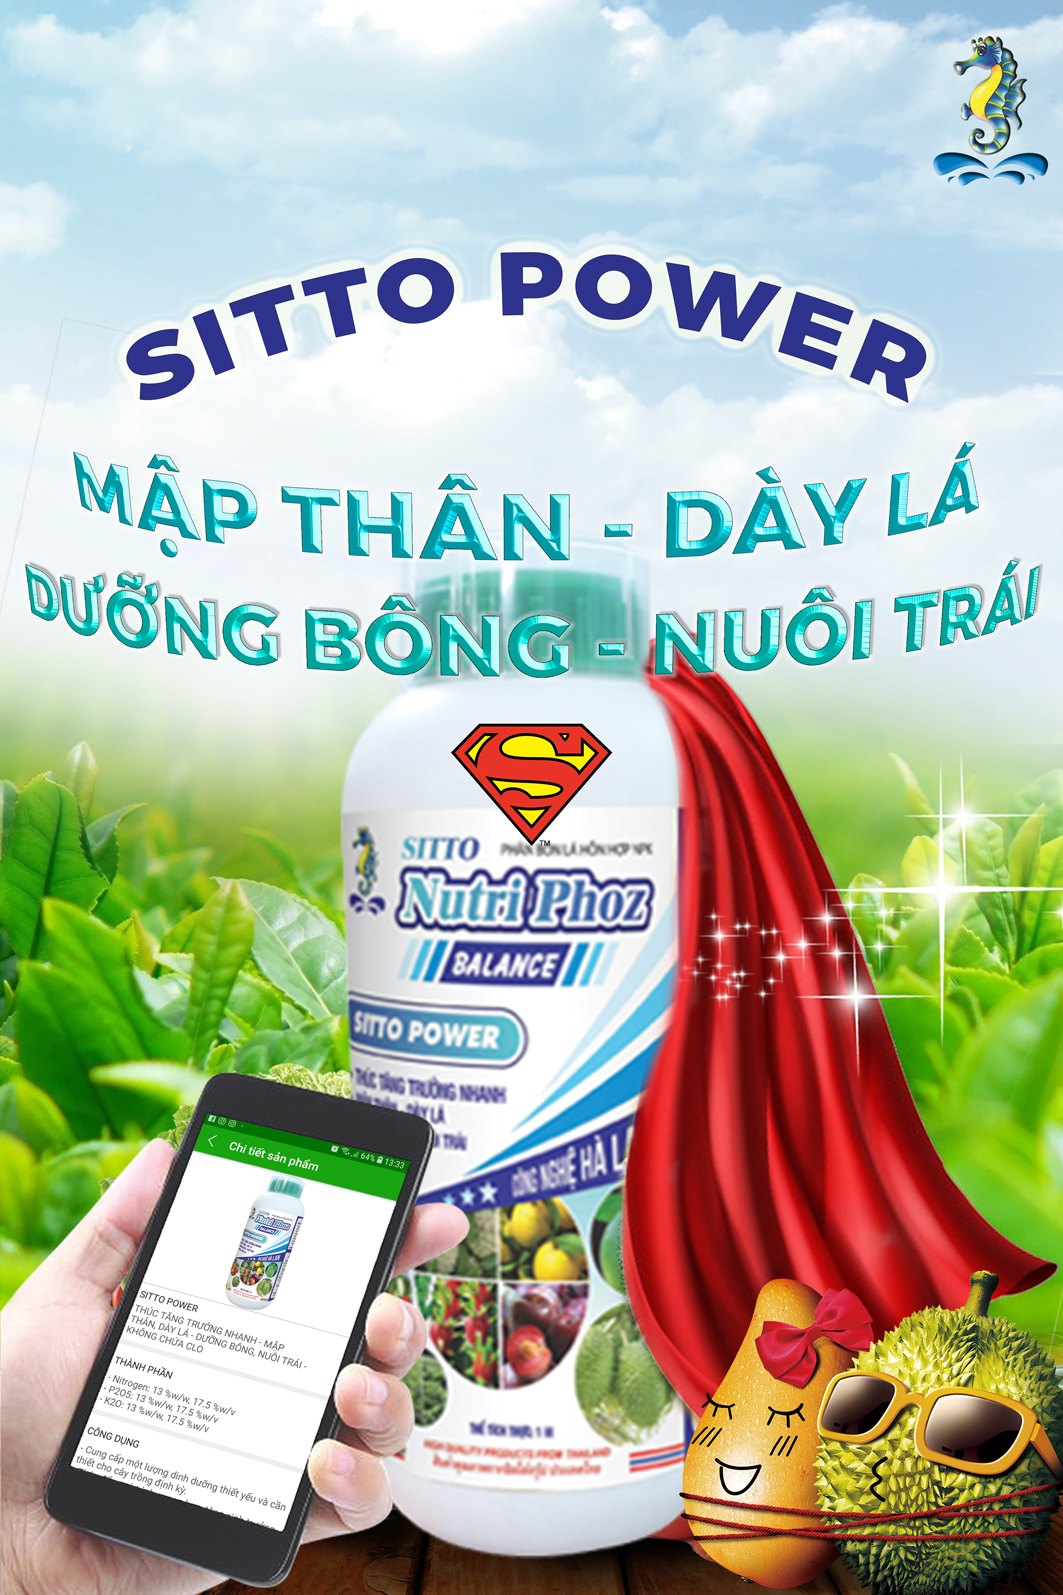 Sitto Power (Chai 1L) - Thúc tăng trưởng nhanh, mập thân, dày lá